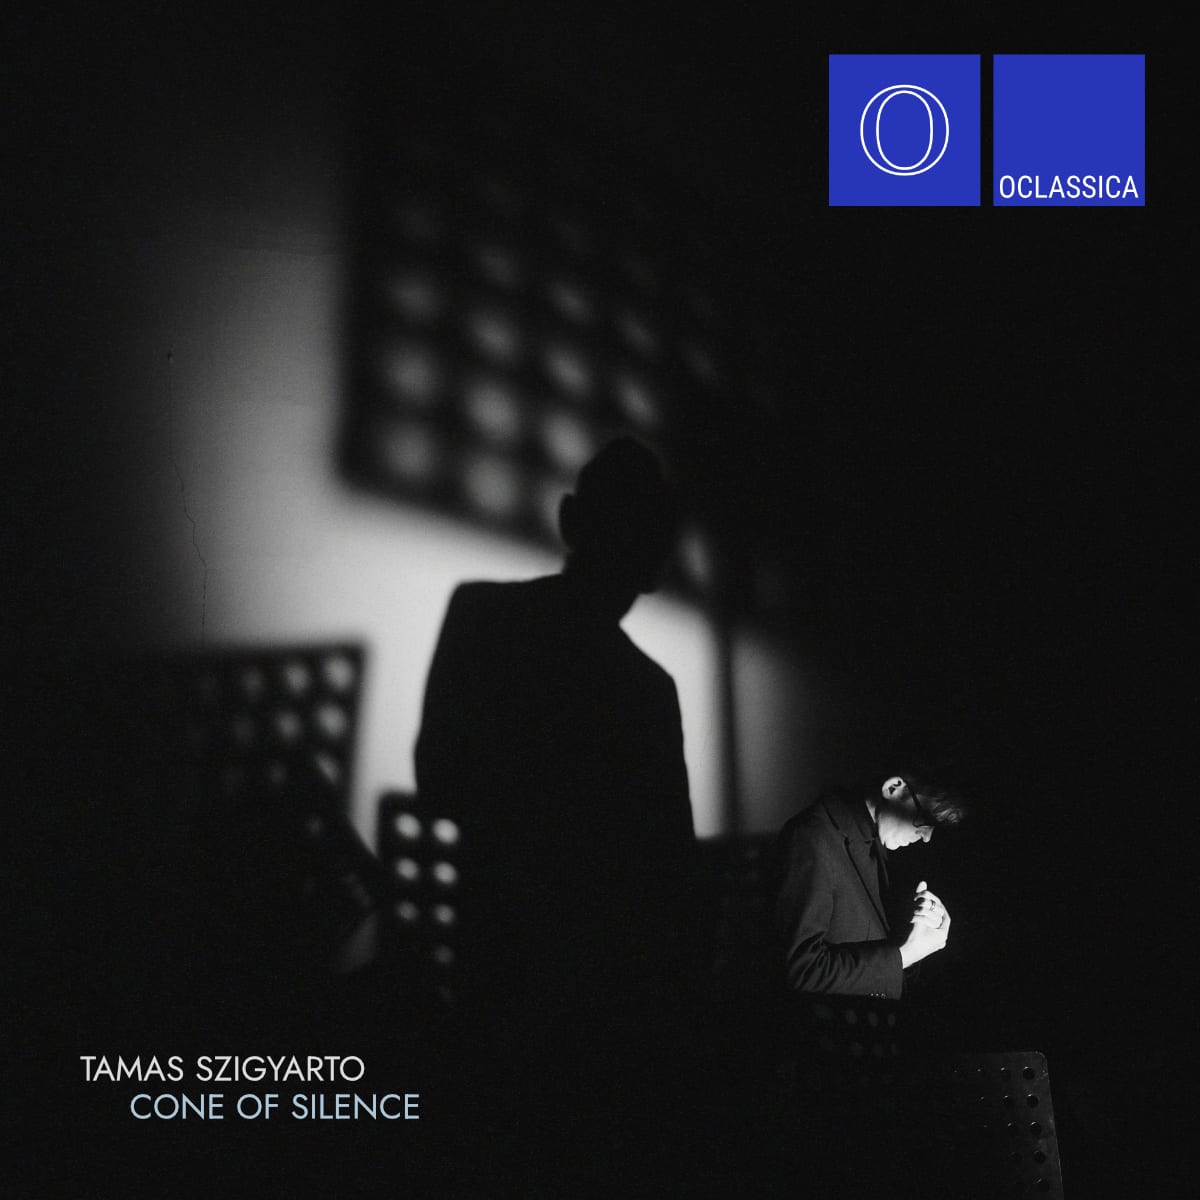 Cone of Silence – Album by Tamas Szigyarto